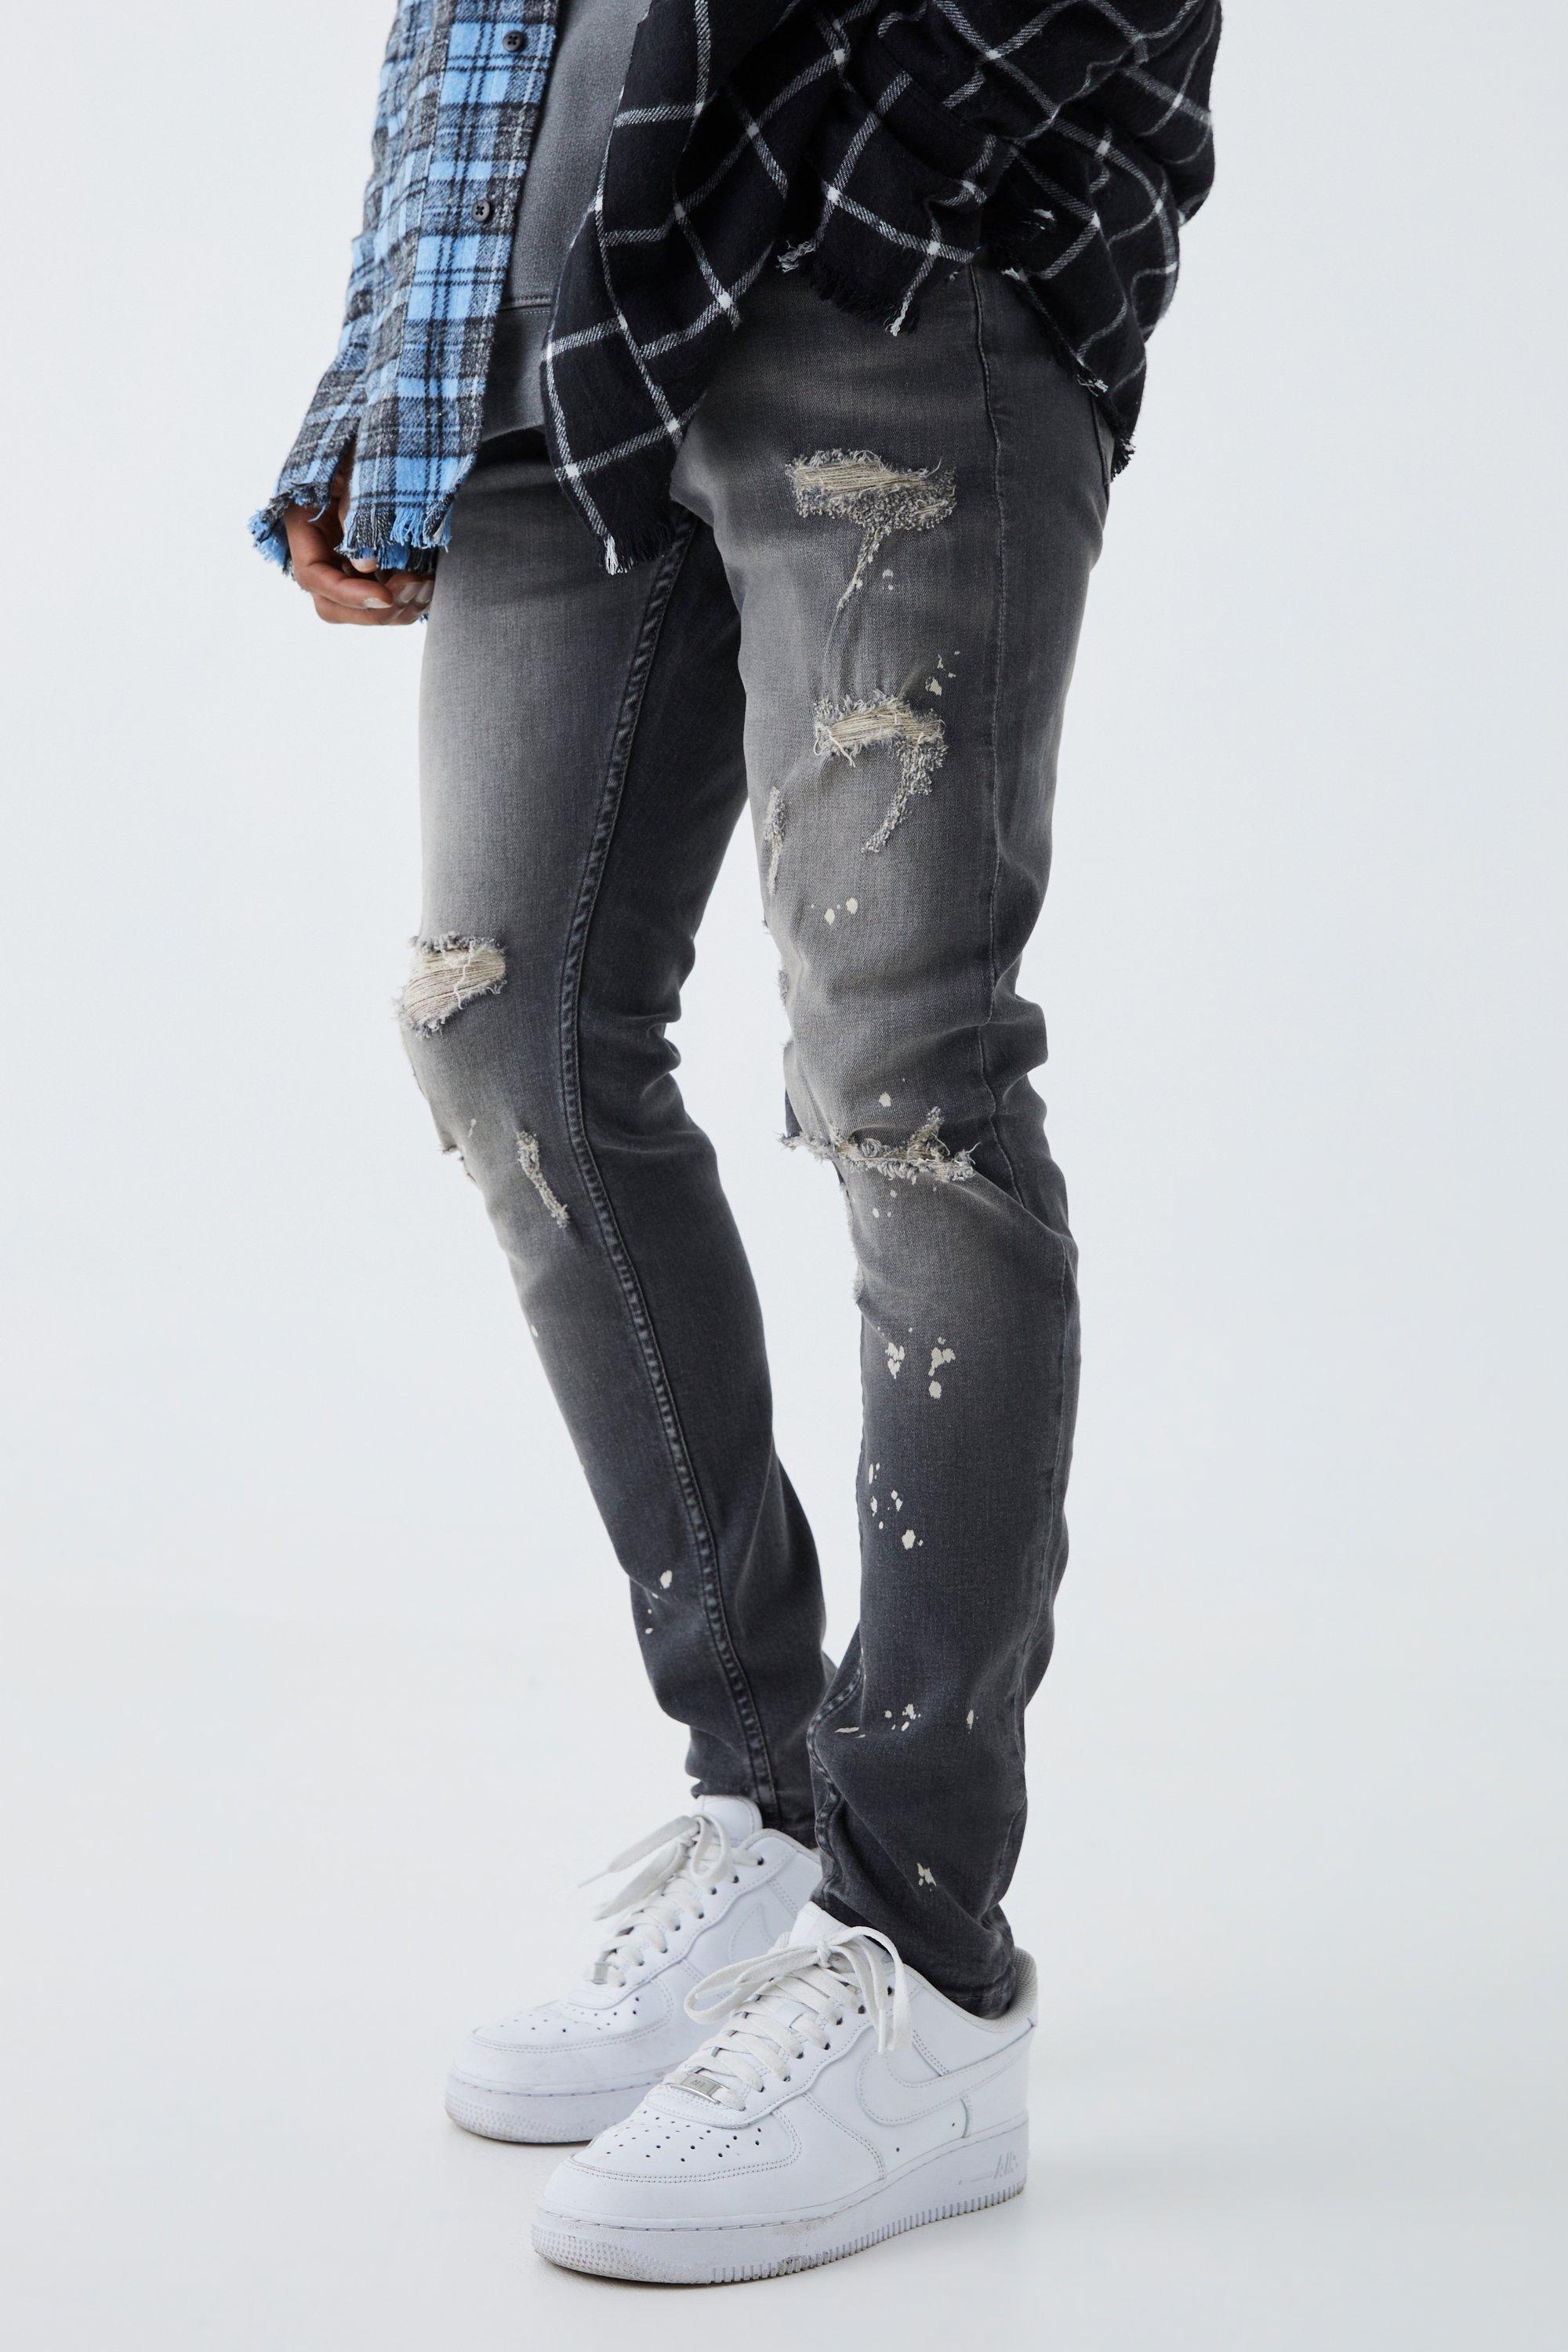 Image of Jeans Skinny Fit Stretch candeggiati con strappi sul ginocchio, Grigio